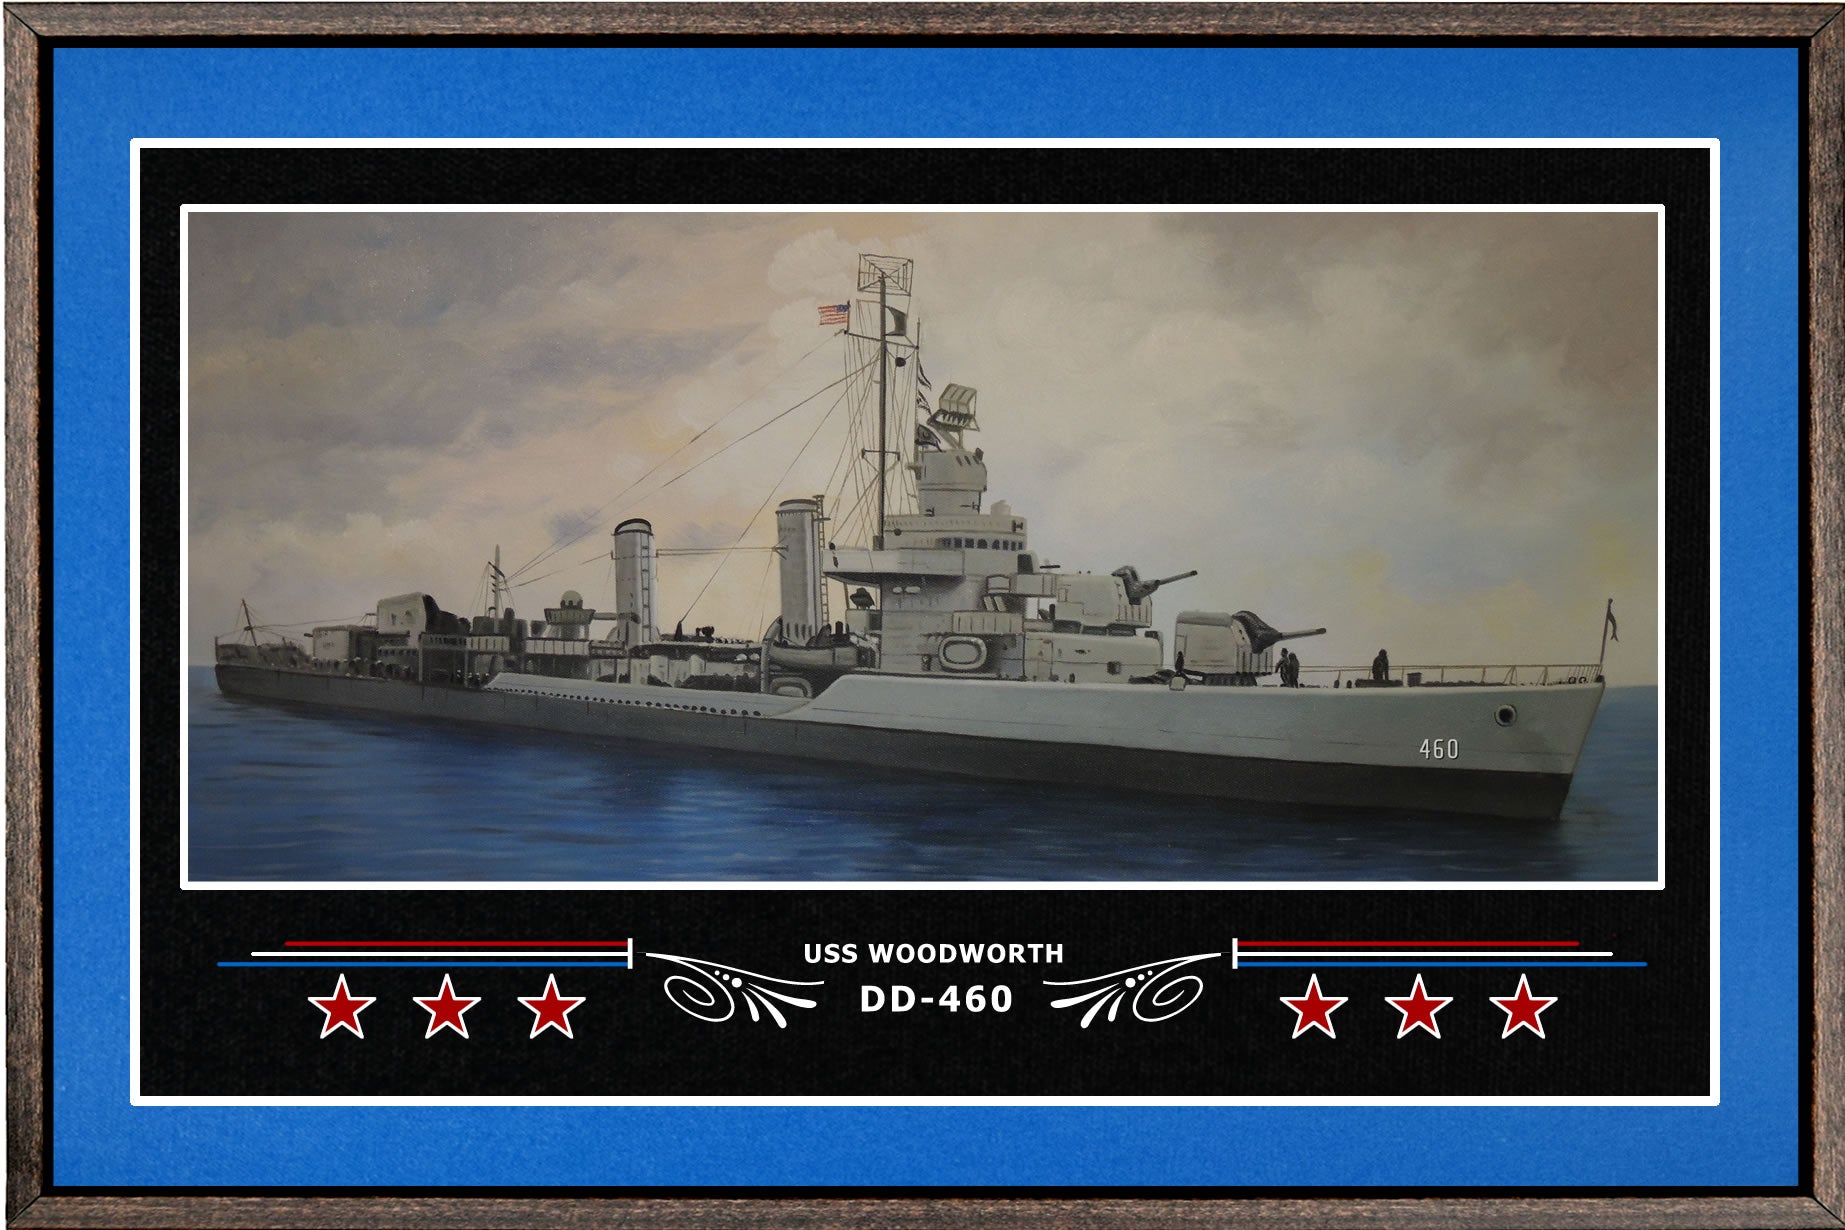 USS WOODWORTH DD 460 BOX FRAMED CANVAS ART BLUE